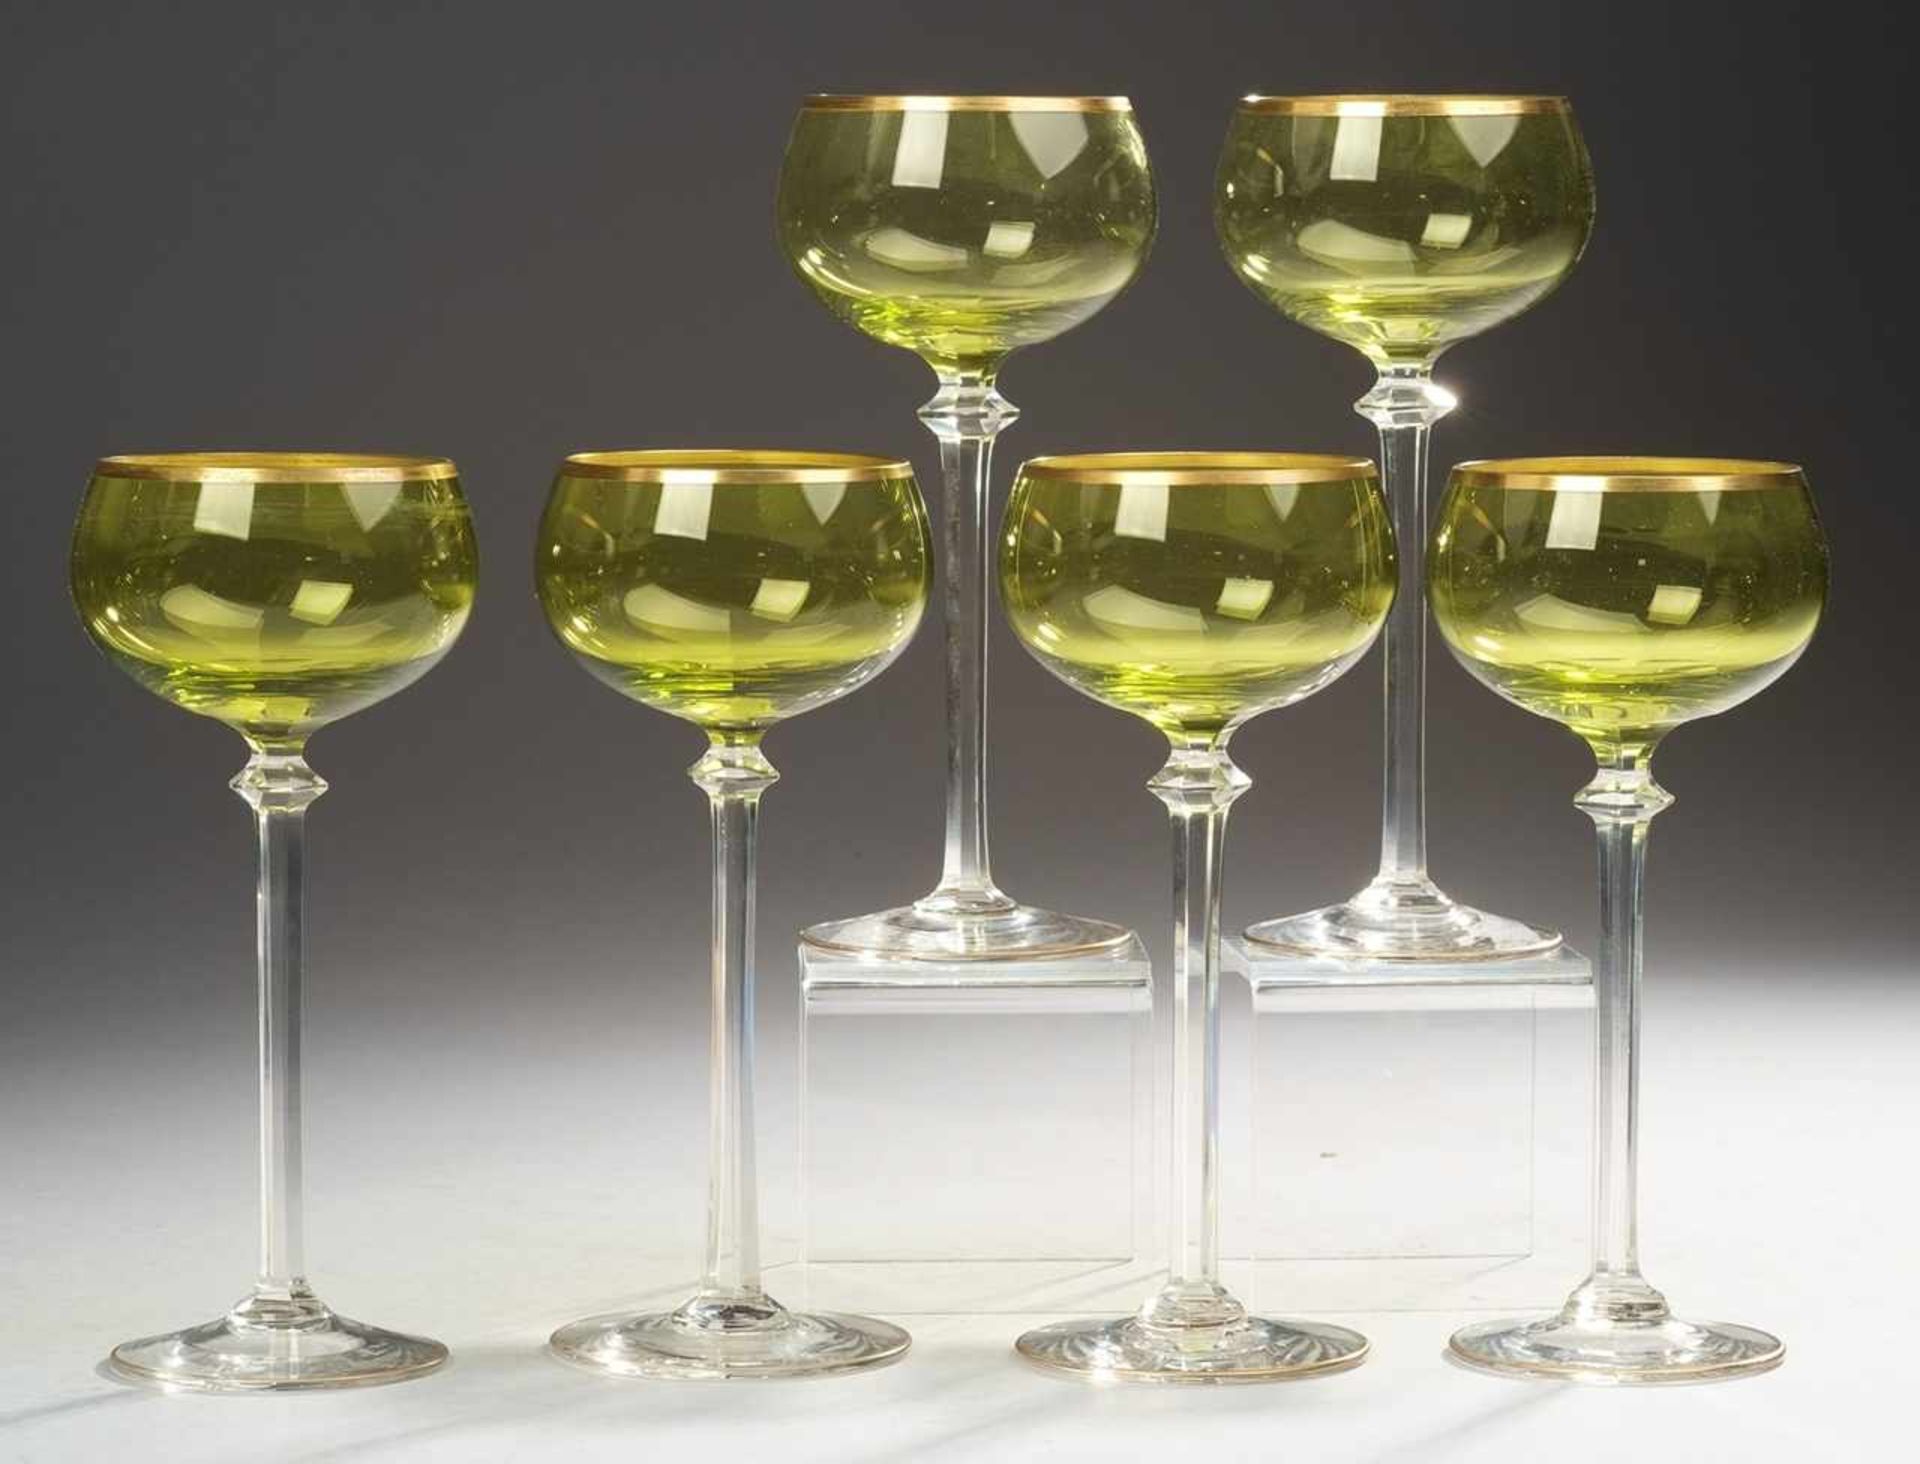 Sechs Jugendstil-WeingläserFarbloses u. grünes Glas. Formgeblasen. Scheibenfuß, schlanker,